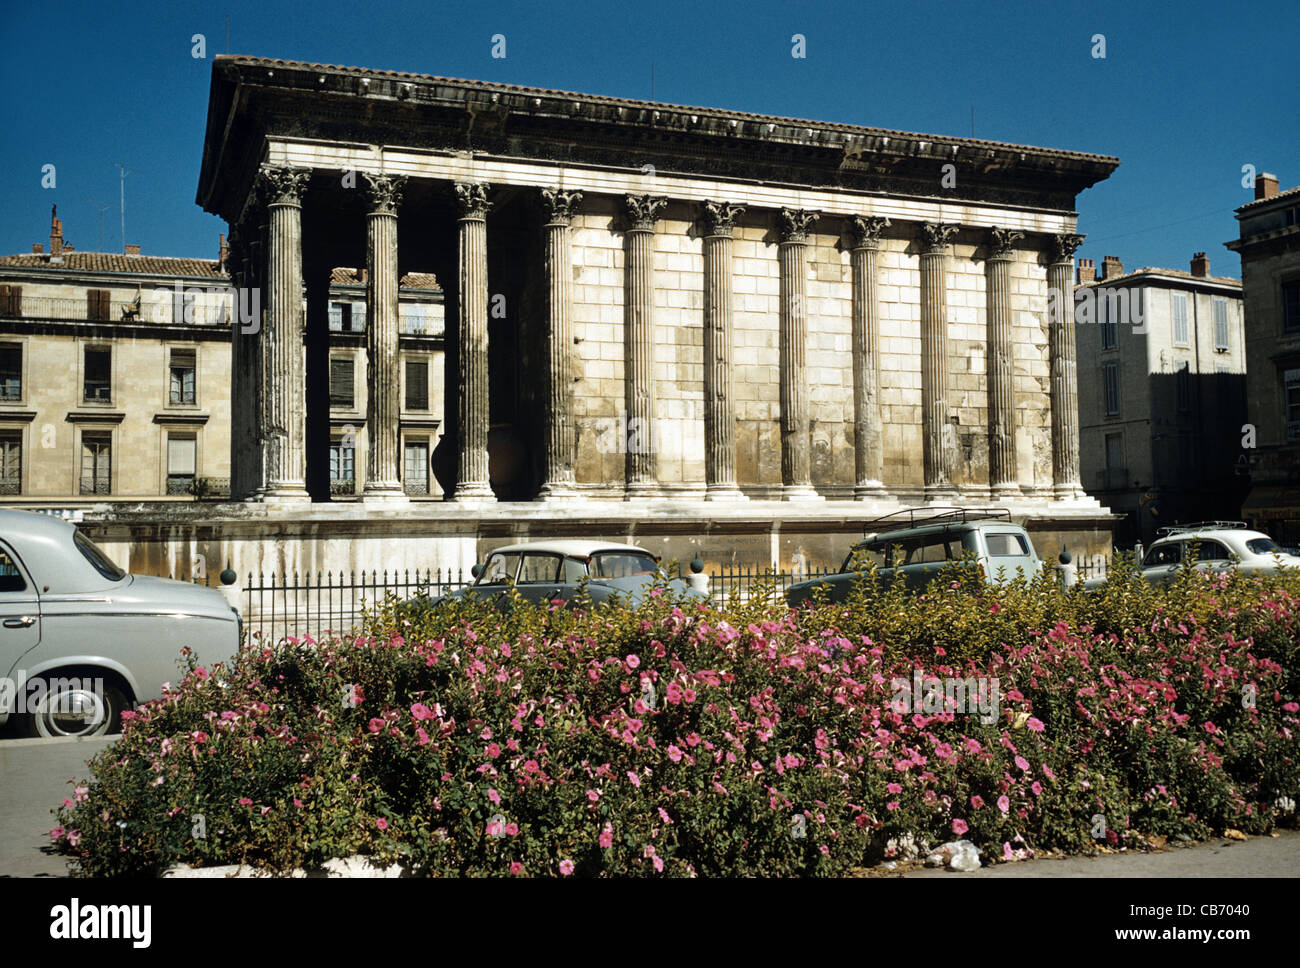 Maison Carrée, Temple Romain, c1960, Nîmes, France Banque D'Images